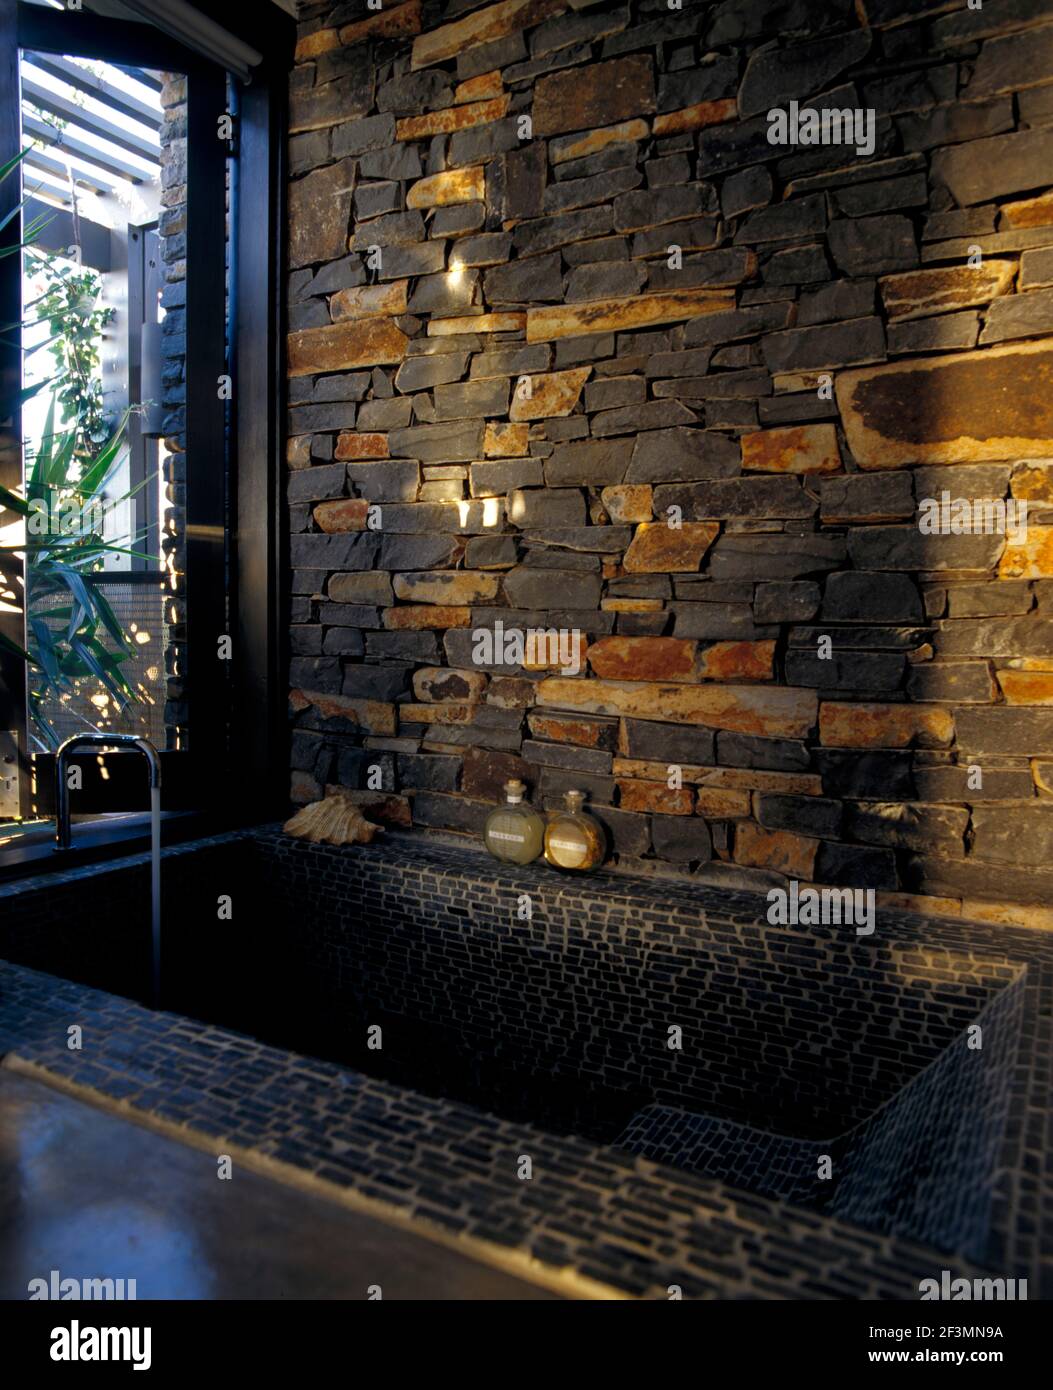 Eingelassene Badewanne im Badezimmer mit freiliegender Steinwand, Bali  Stockfotografie - Alamy